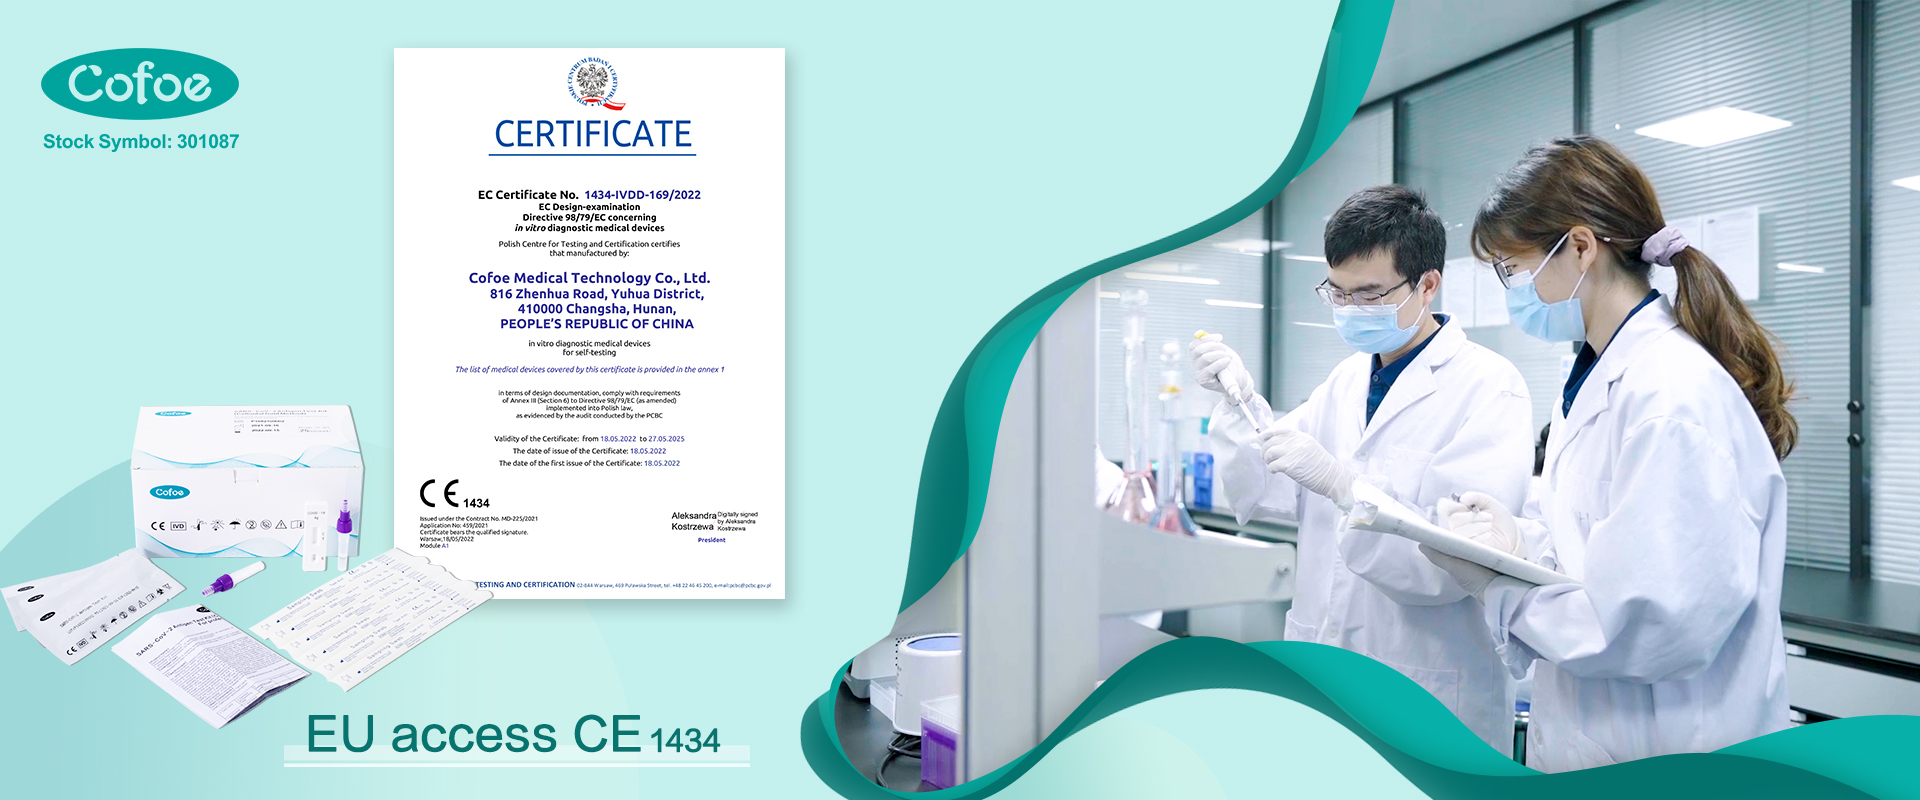 Cofoe получил доступ к самостоятельному тестированию Ag к Marke после получения сертификата CE1434 18 мая